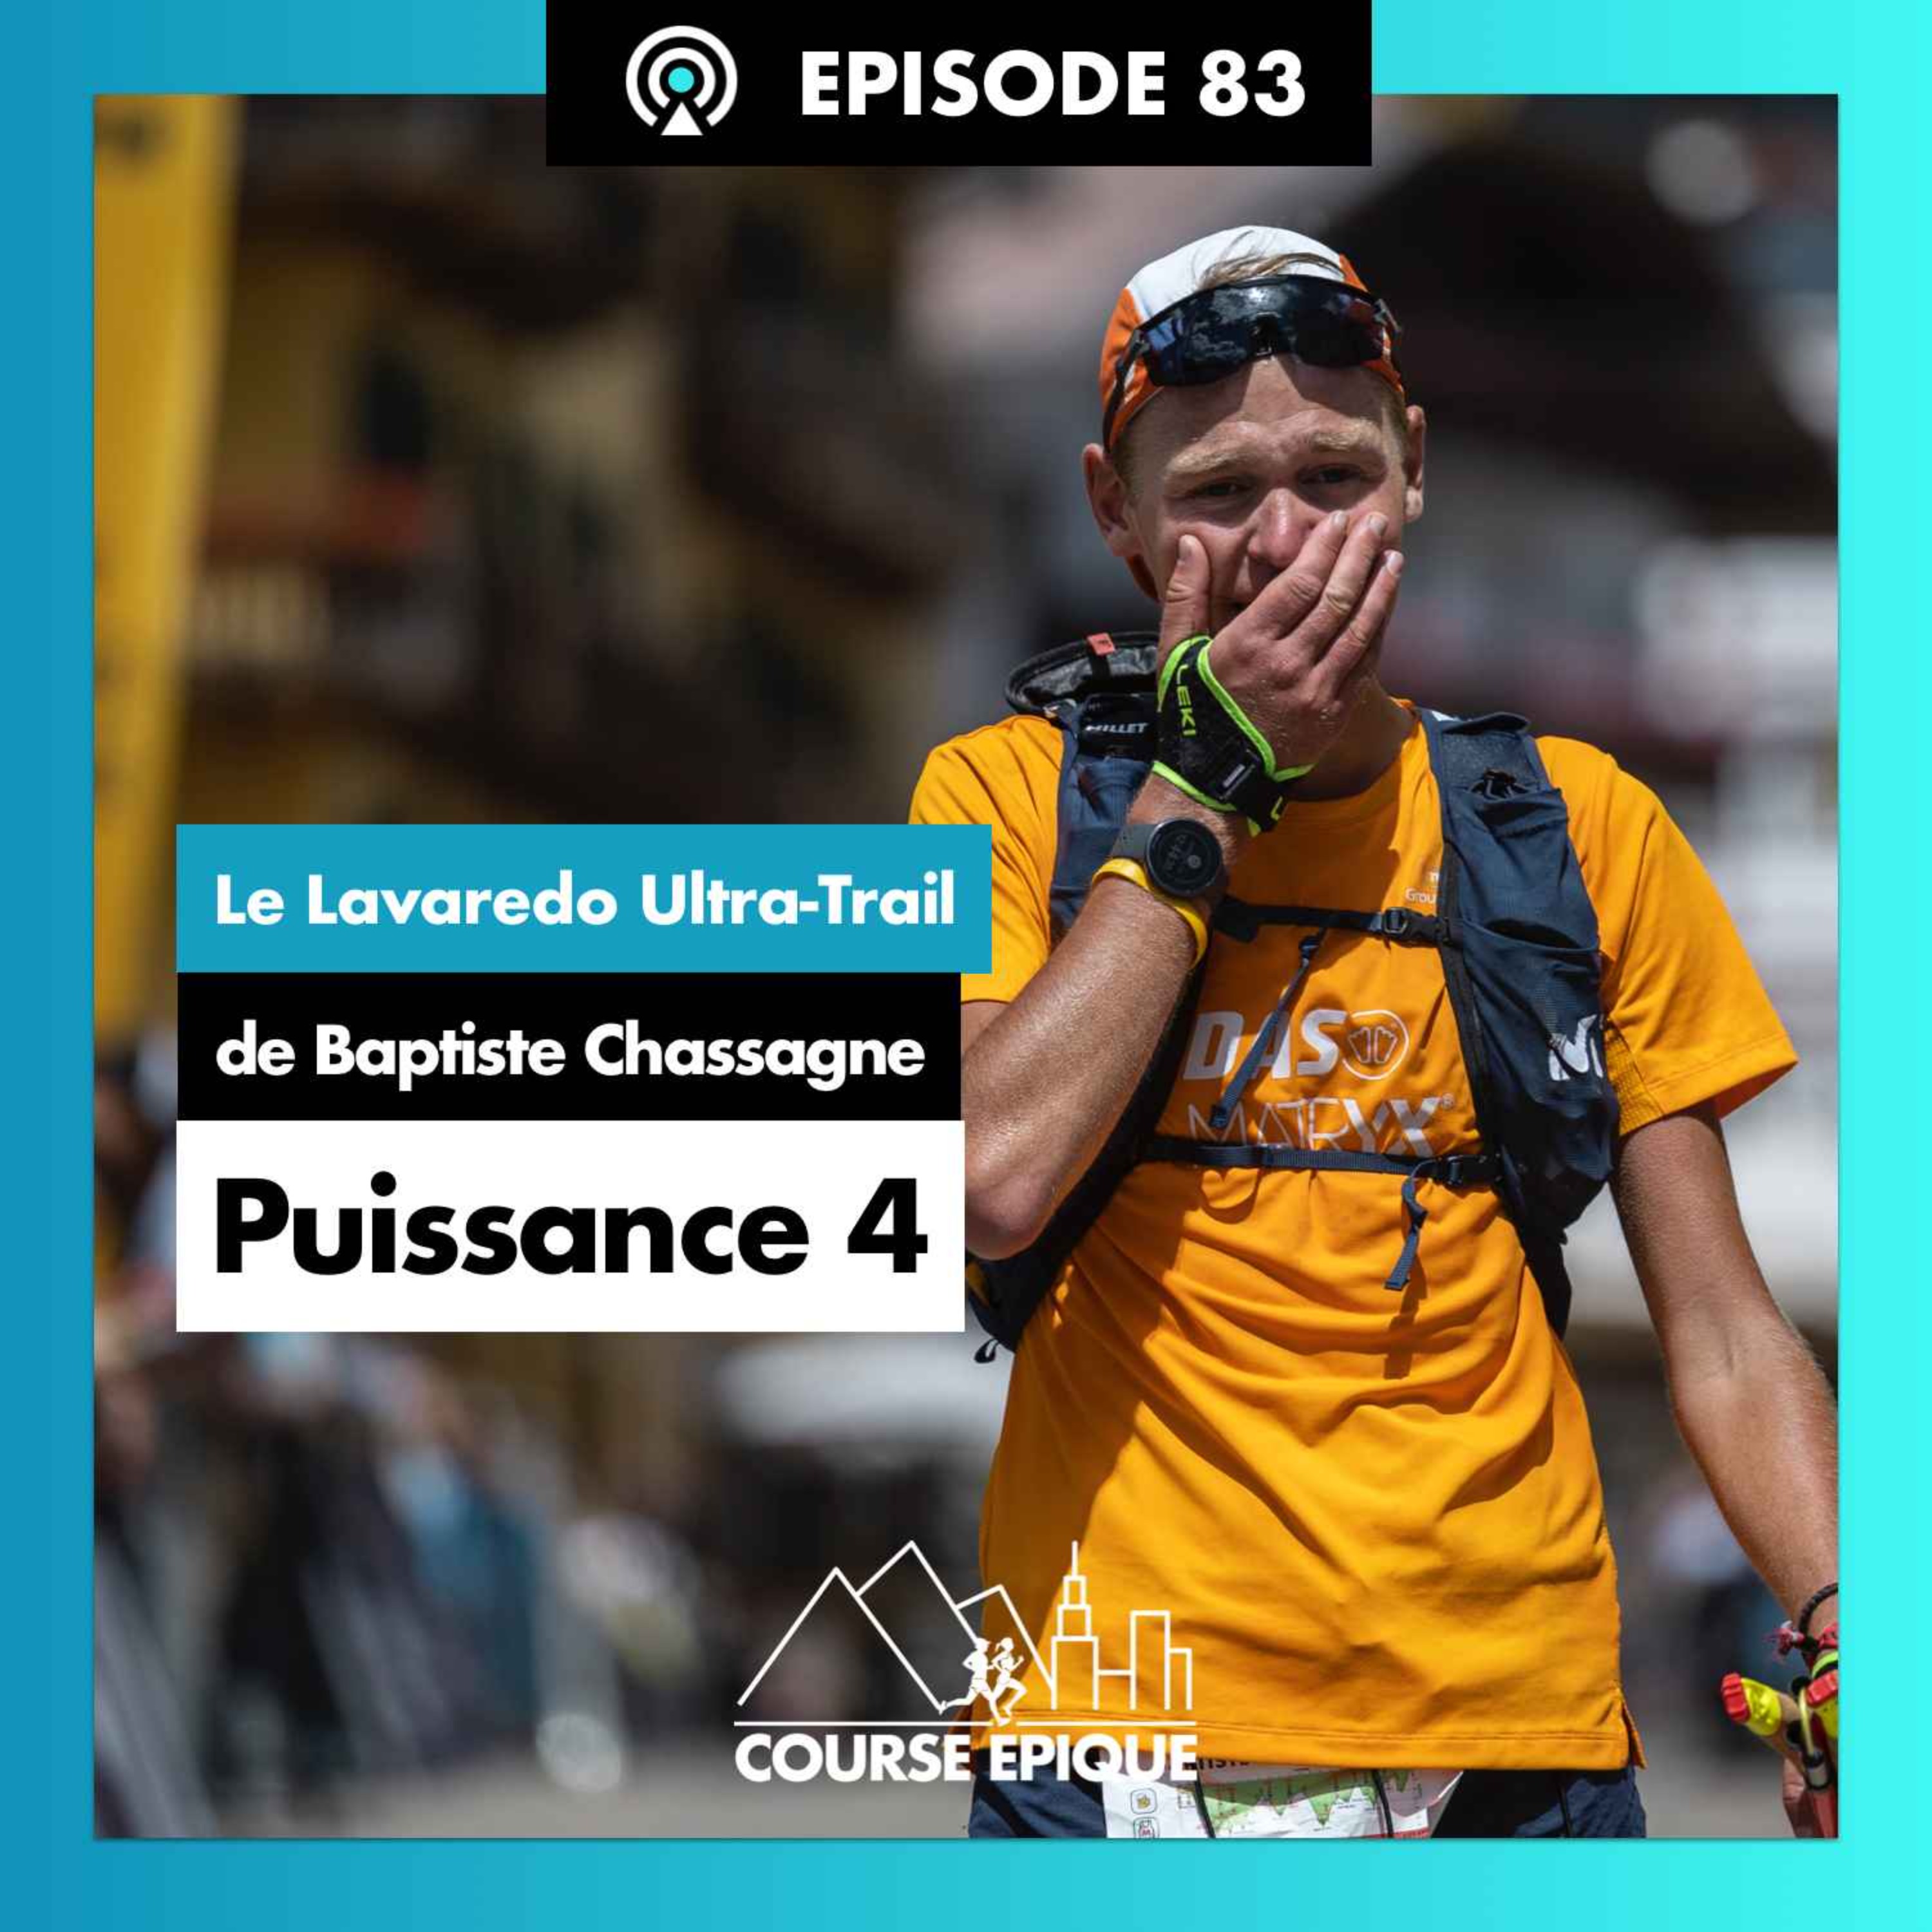 #83 "Puissance 4", le Lavaredo Ultra-Trail de Baptiste Chassagne